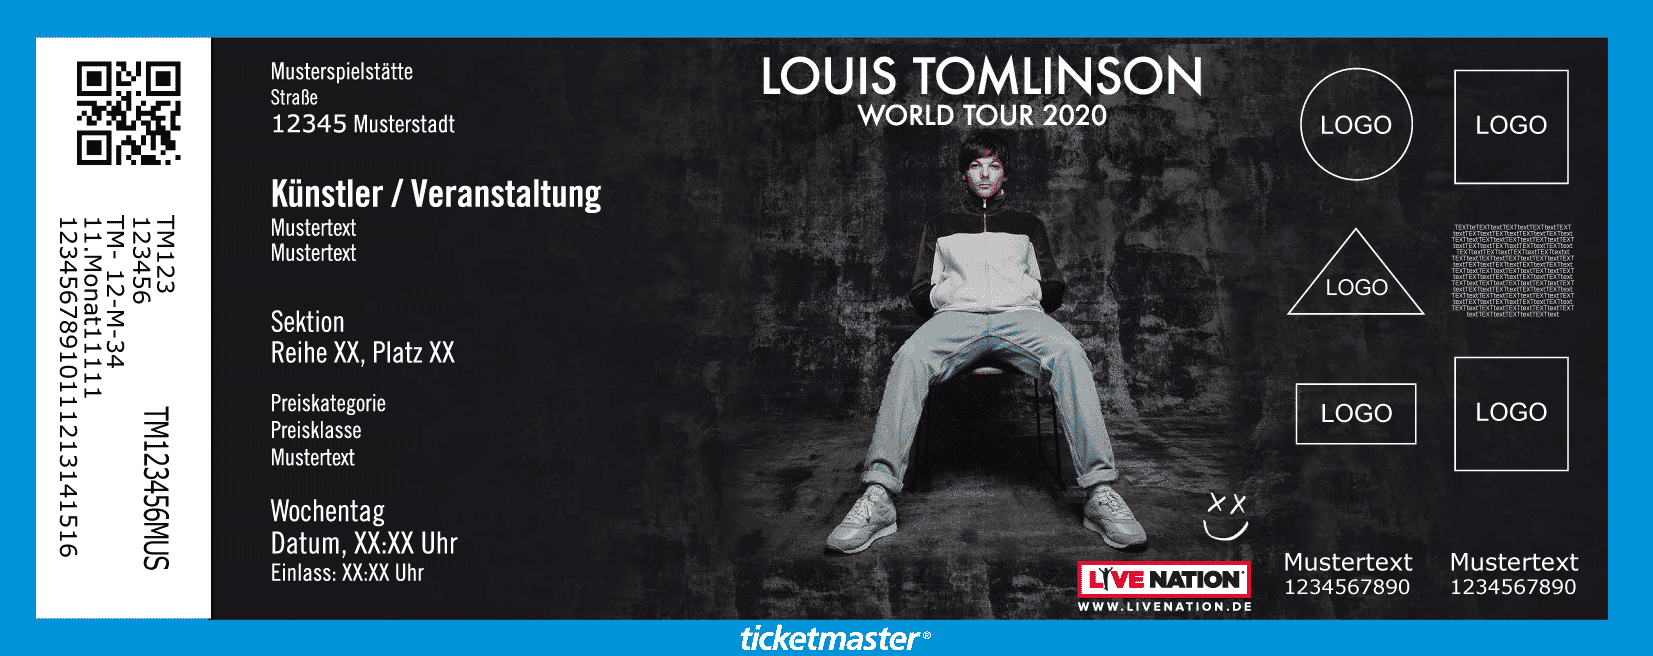 Louis Tomlinson kommt im März 2020 solo nach Berlin | Ticketmaster Blog